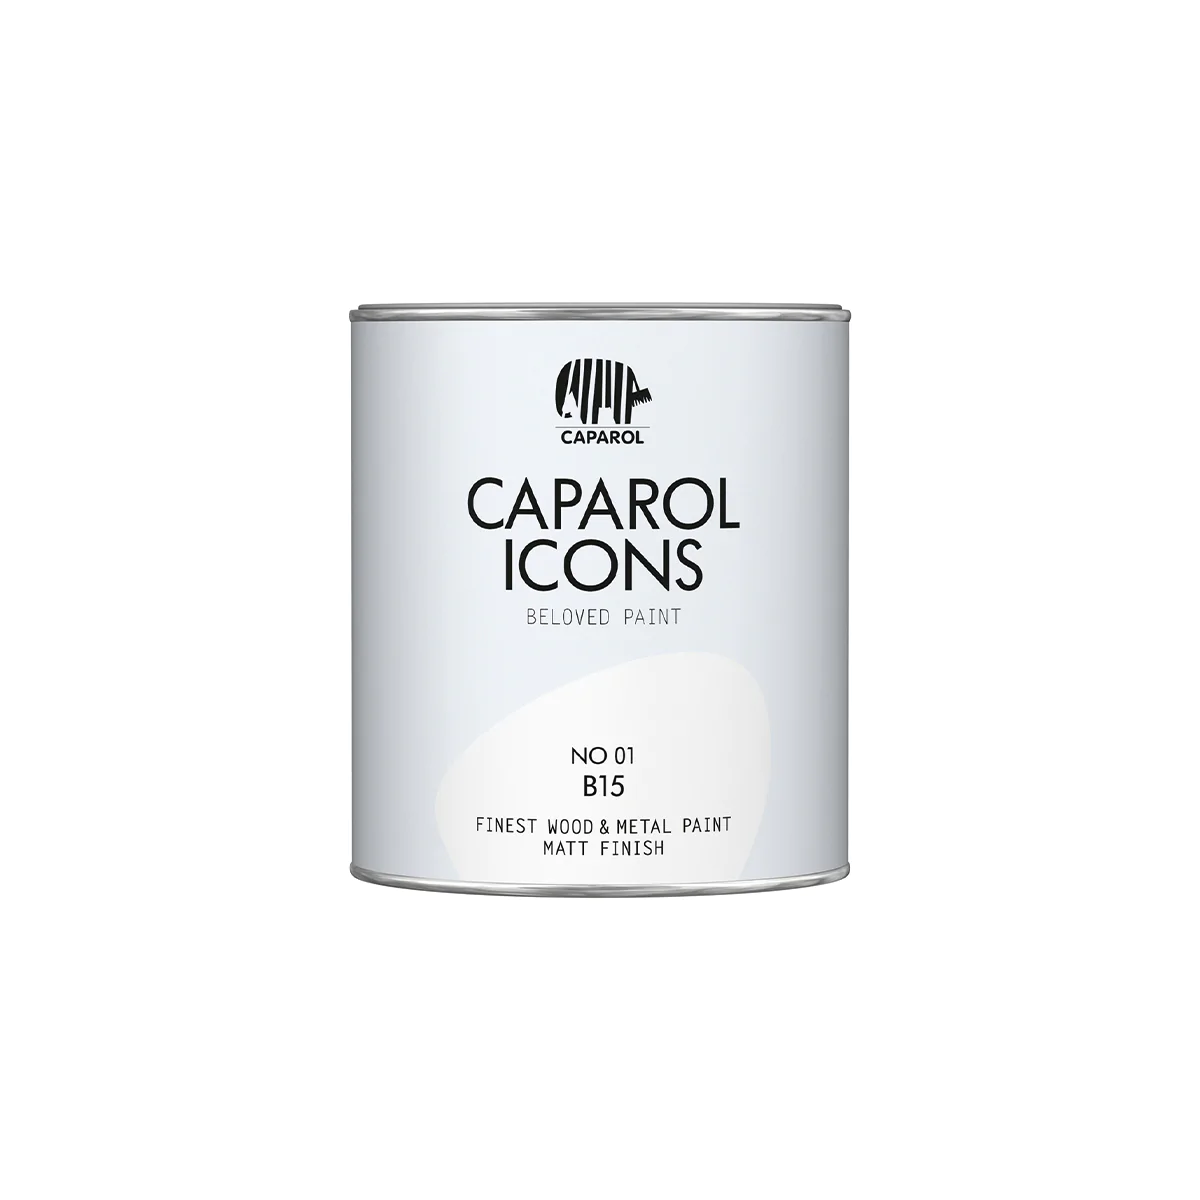 Caparol ICONS Sample, NO 01 B15